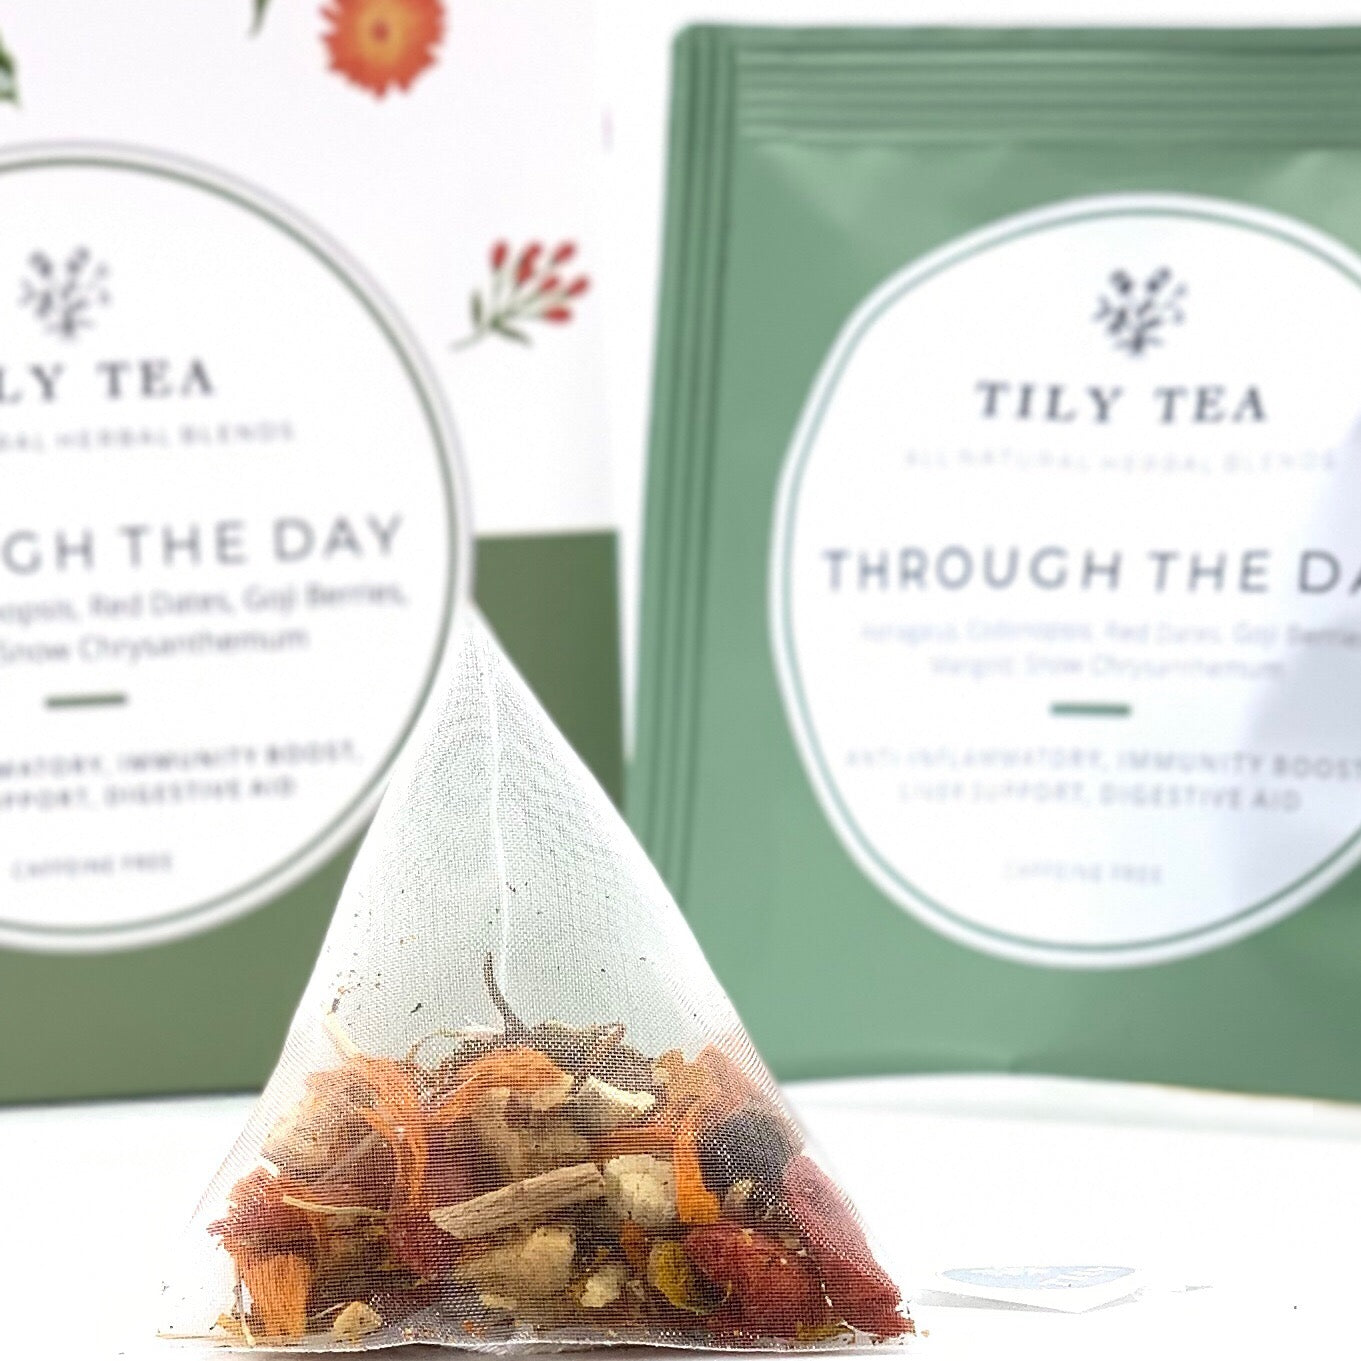 Through The Day - Tily Tea